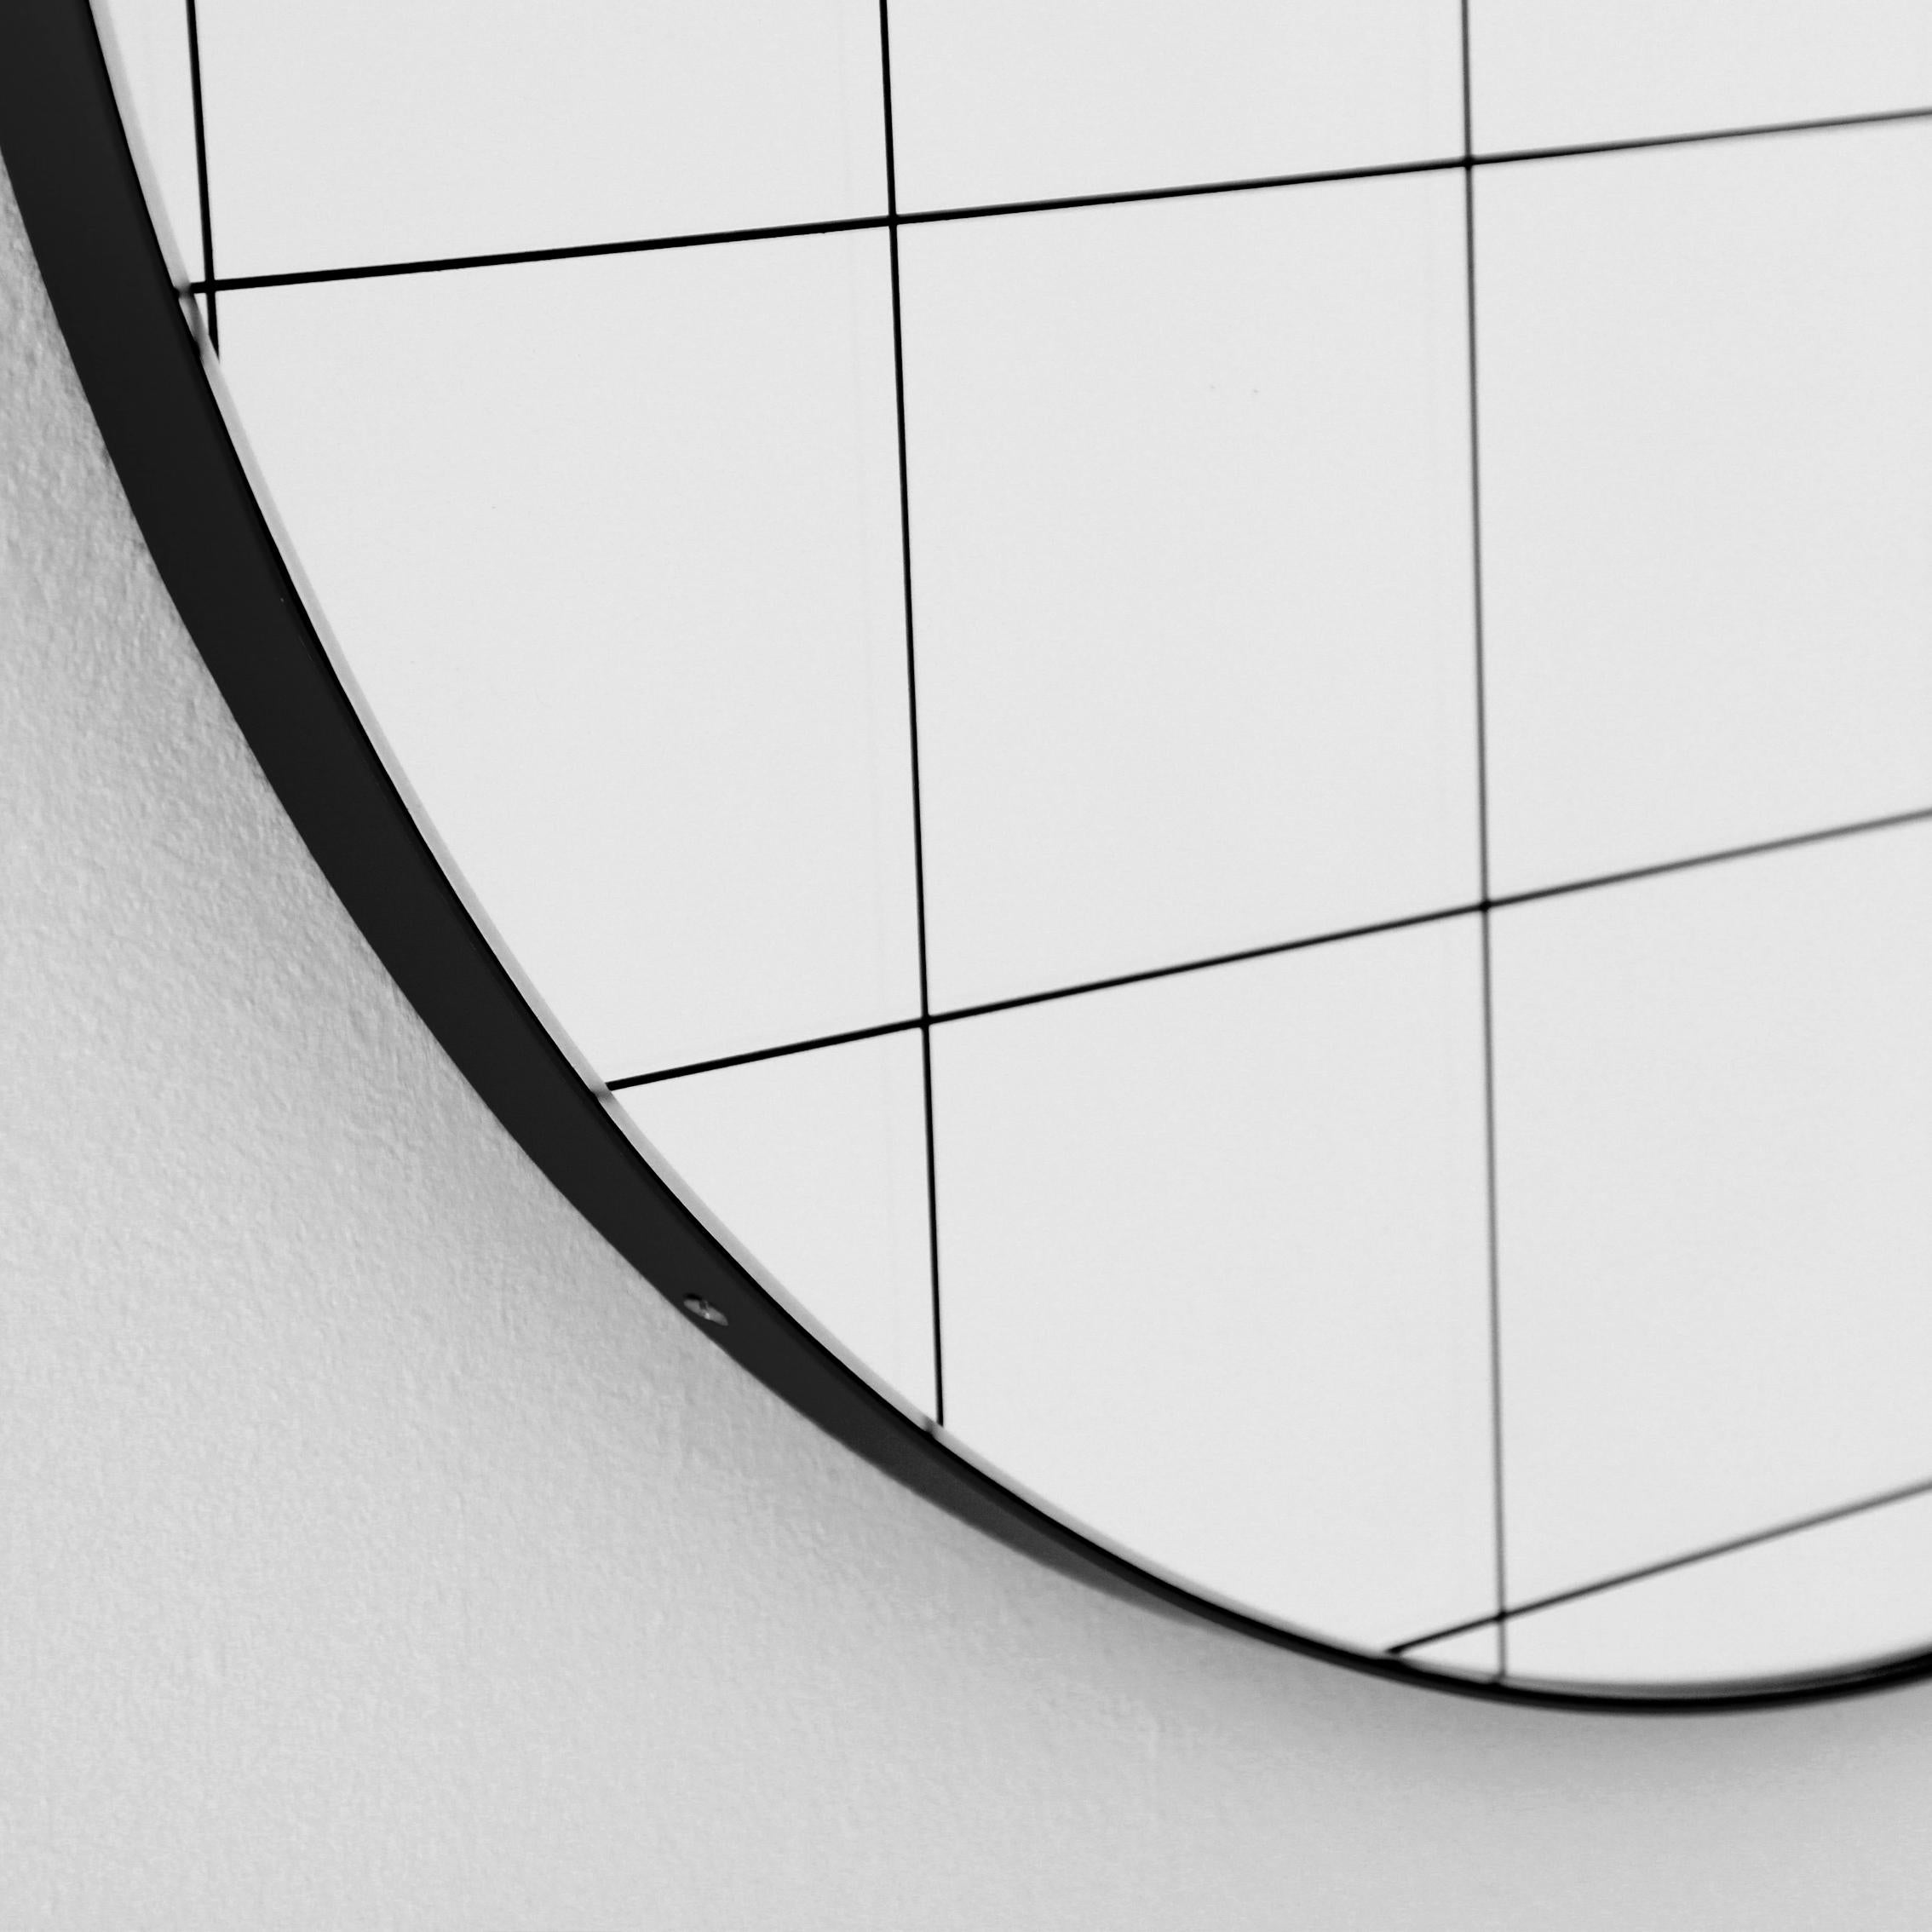 British Orbis Black Grid Sandblasted Round Modern Mirror with Black Frame, Medium